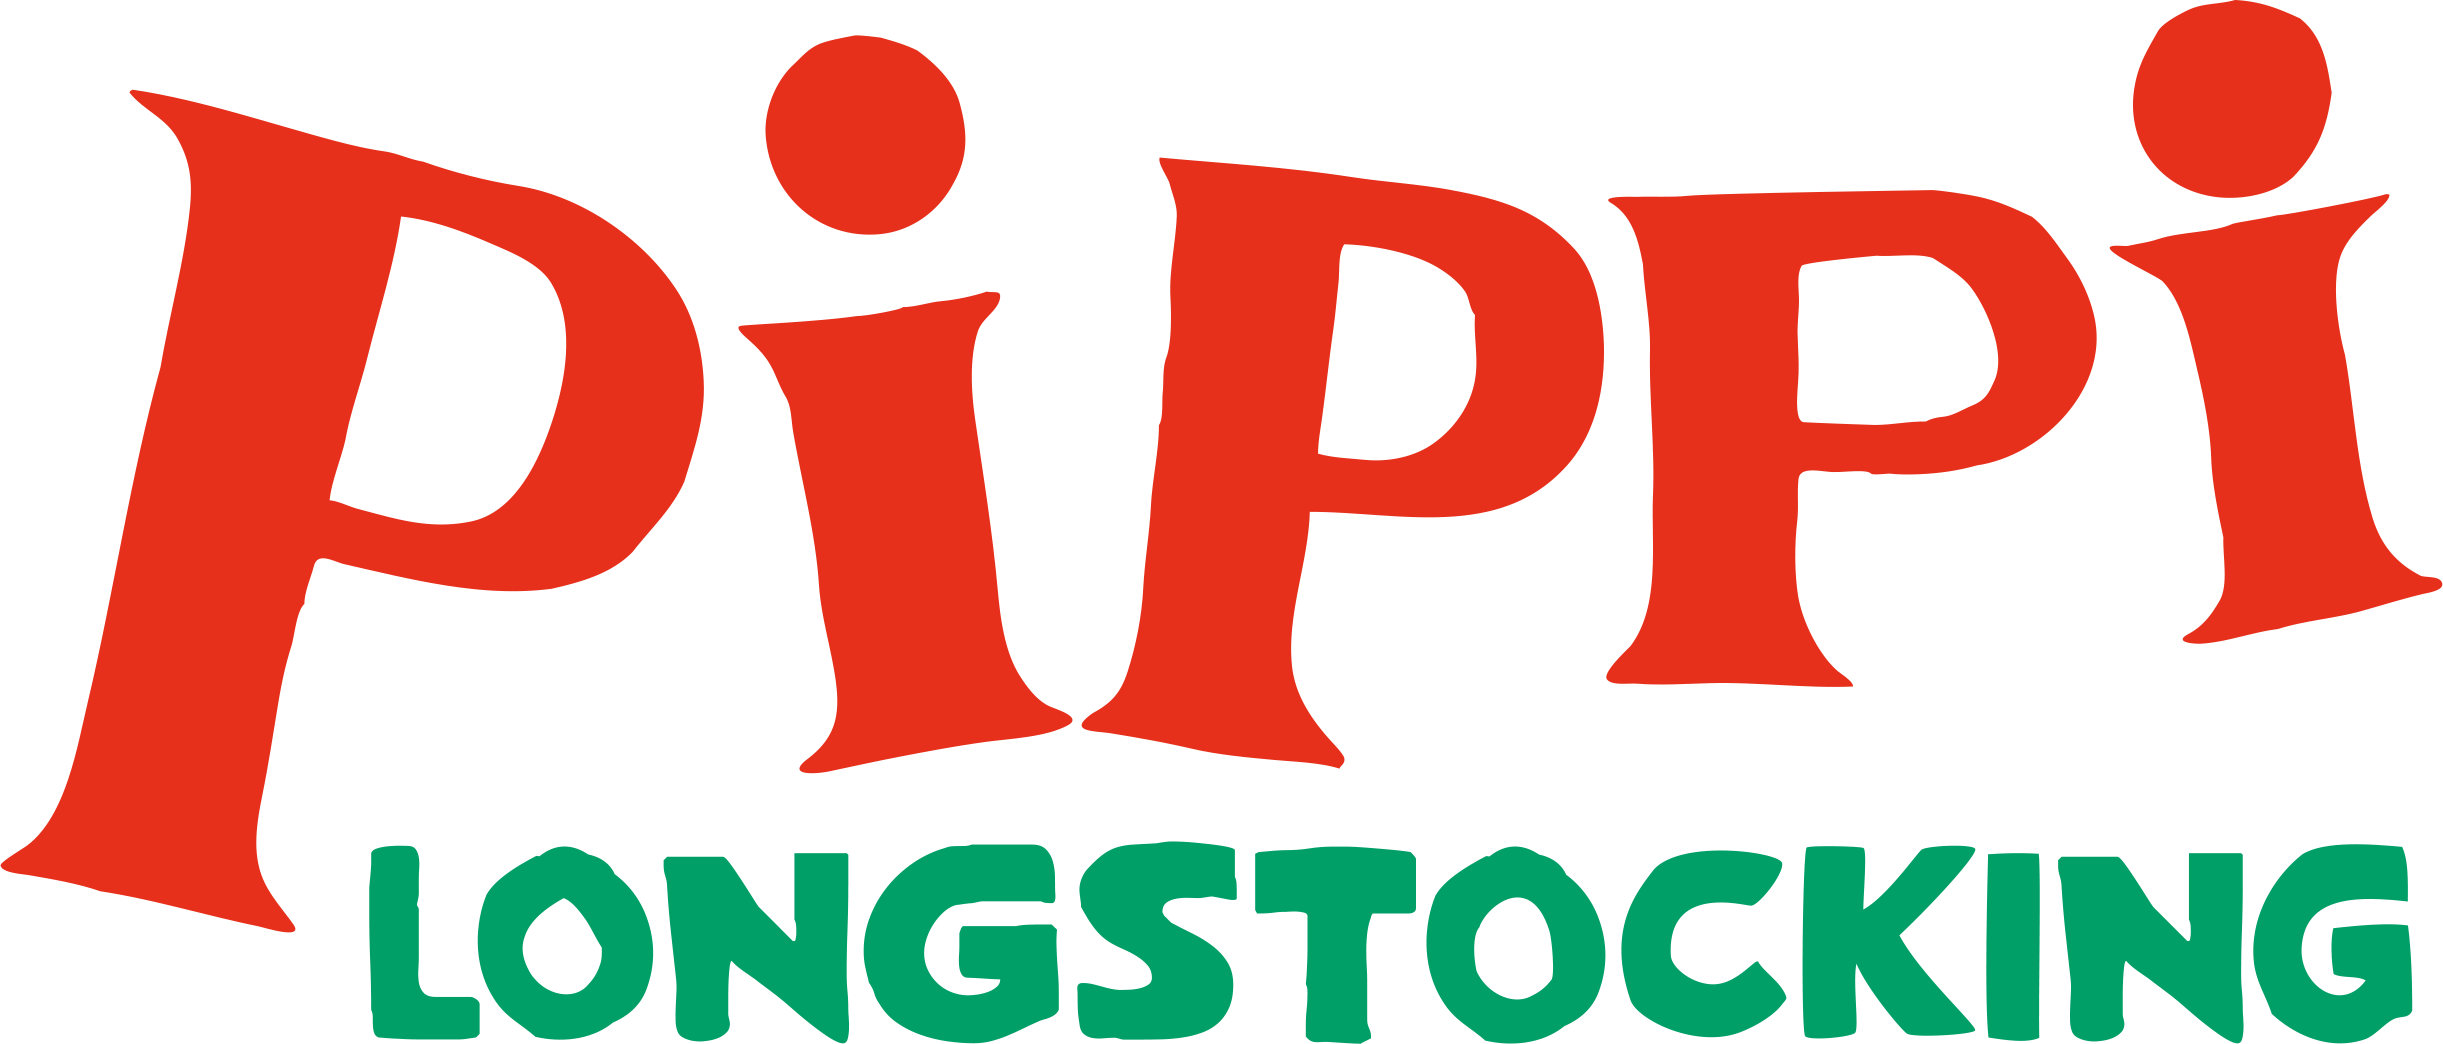 Pippi Longstocking stoffpüppchen Micki juguetes 2 tamaños 